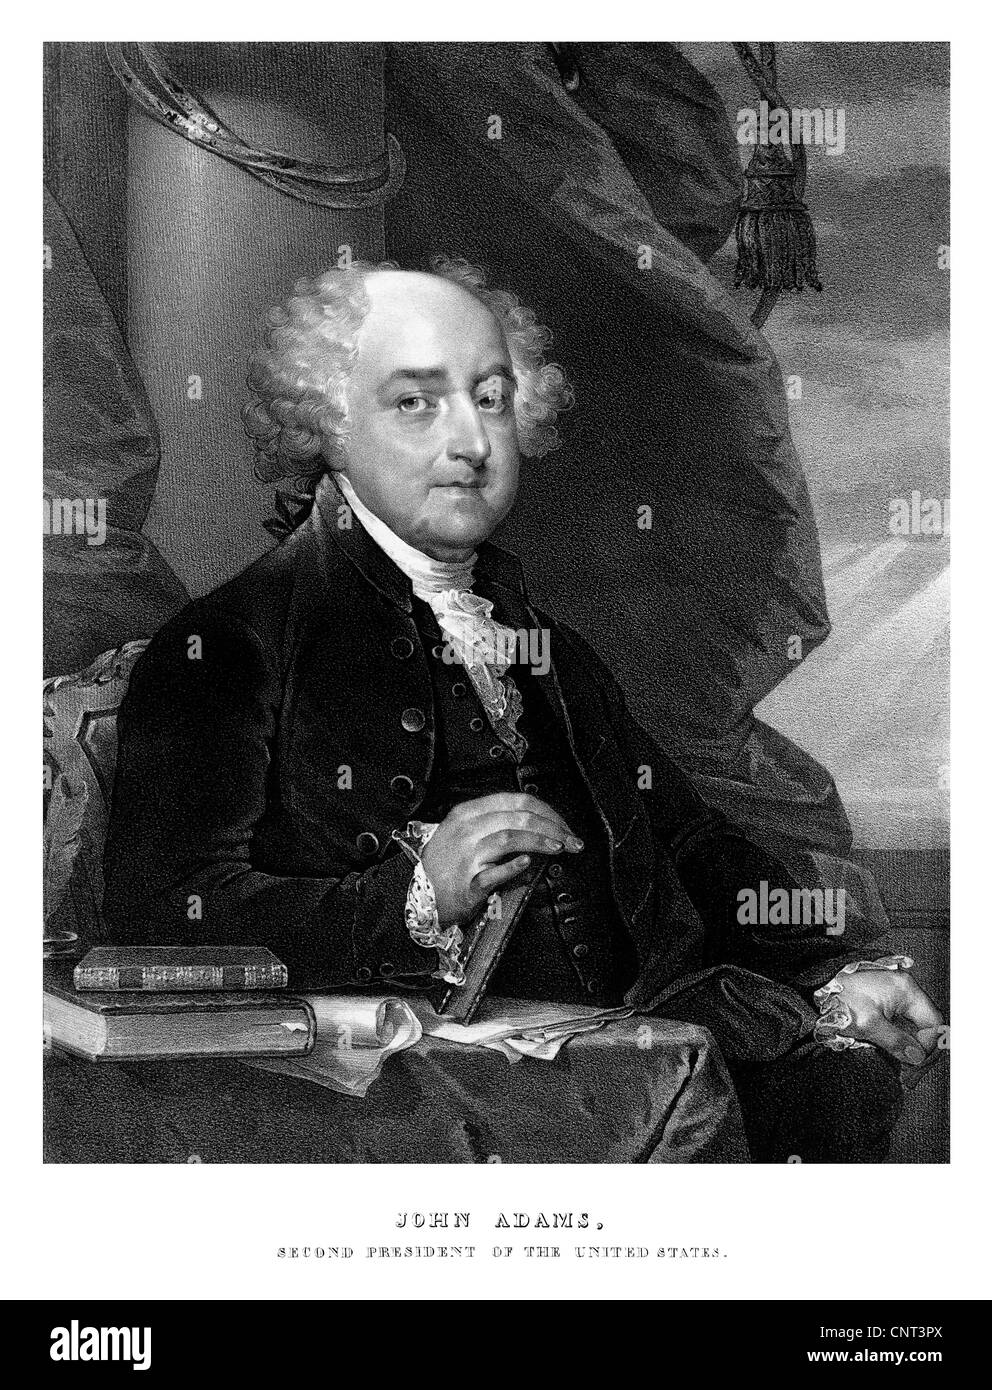 Digital restaurierten drucken von John Adams. Stockfoto